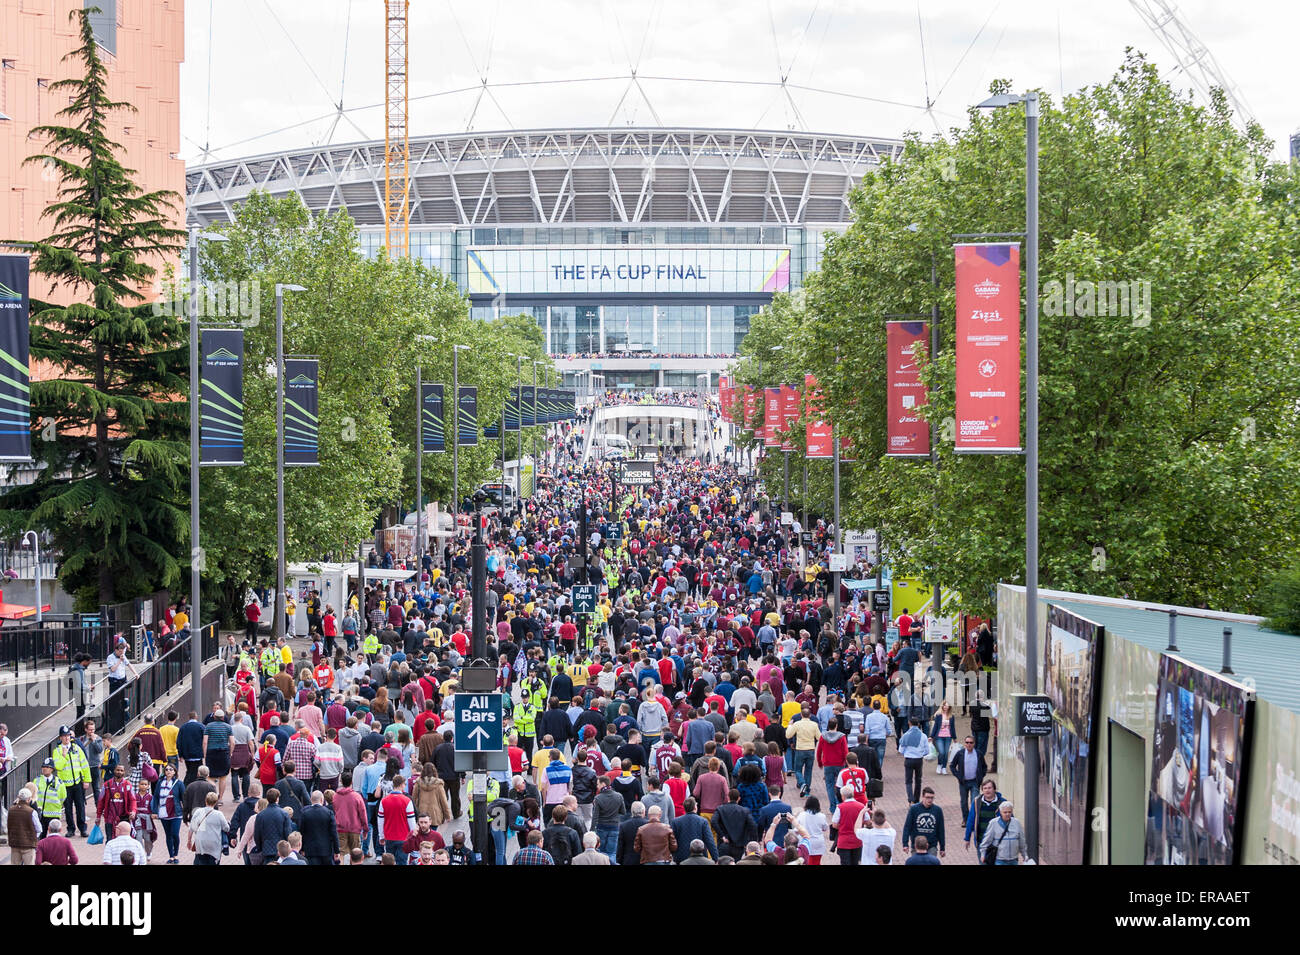 Londres, Royaume-Uni. 30 mai 2015. La foule, comme Wembley fans au stade de Wembley pour la finale de la FA Cup 2015 entre Arsenal et Aston Villa. Crédit : Stephen Chung / Alamy Live News Banque D'Images